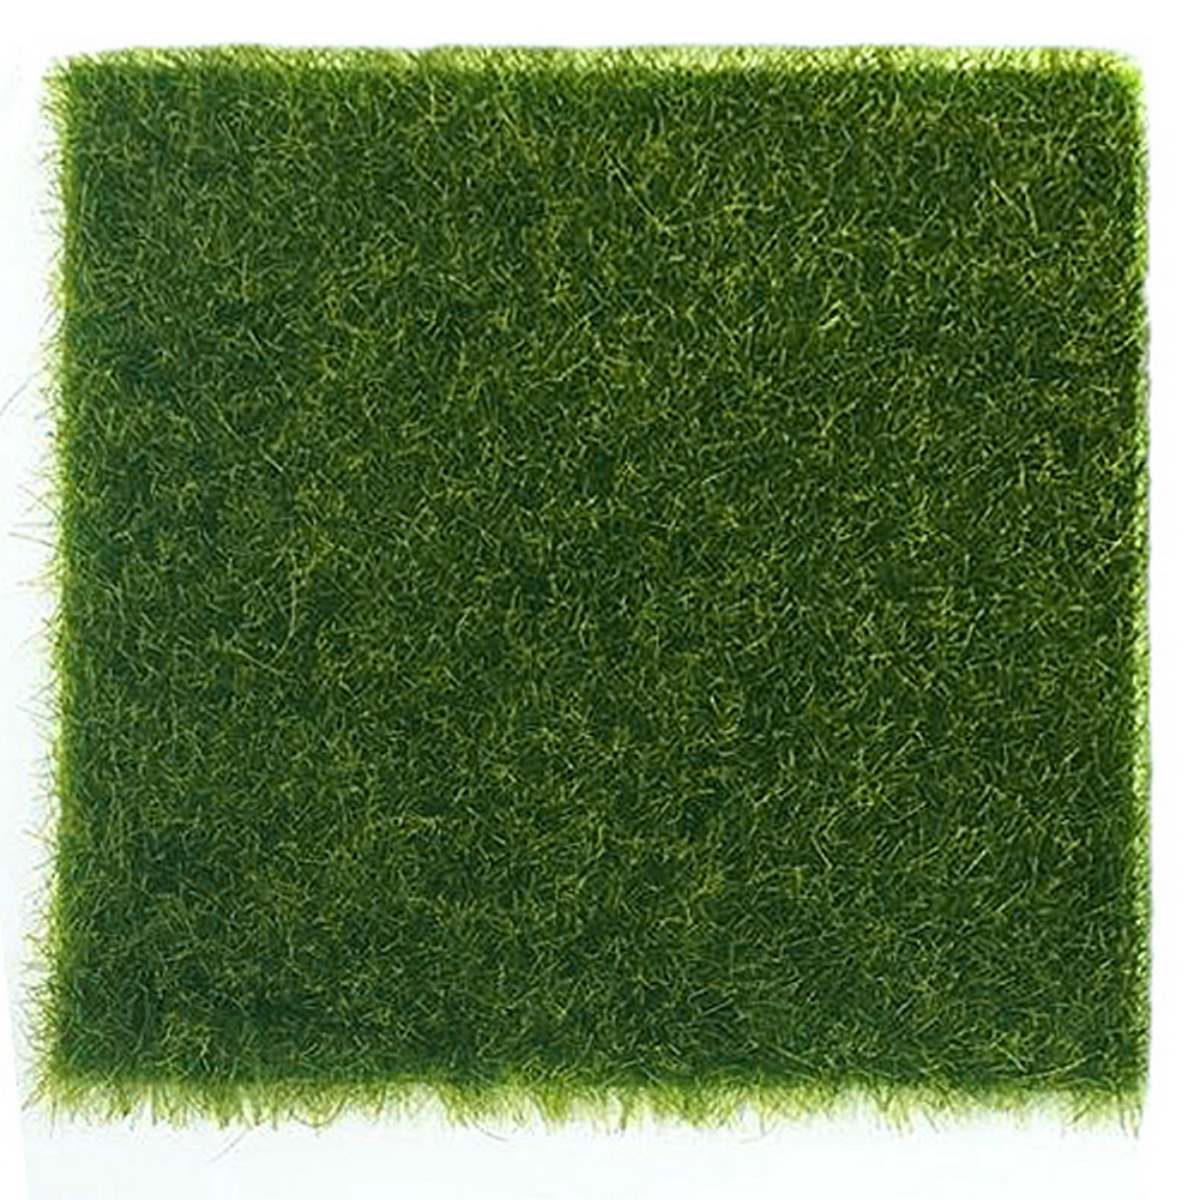 jags-mumbai Artificial Grass Garden Grass Mat 39x20 Inchs